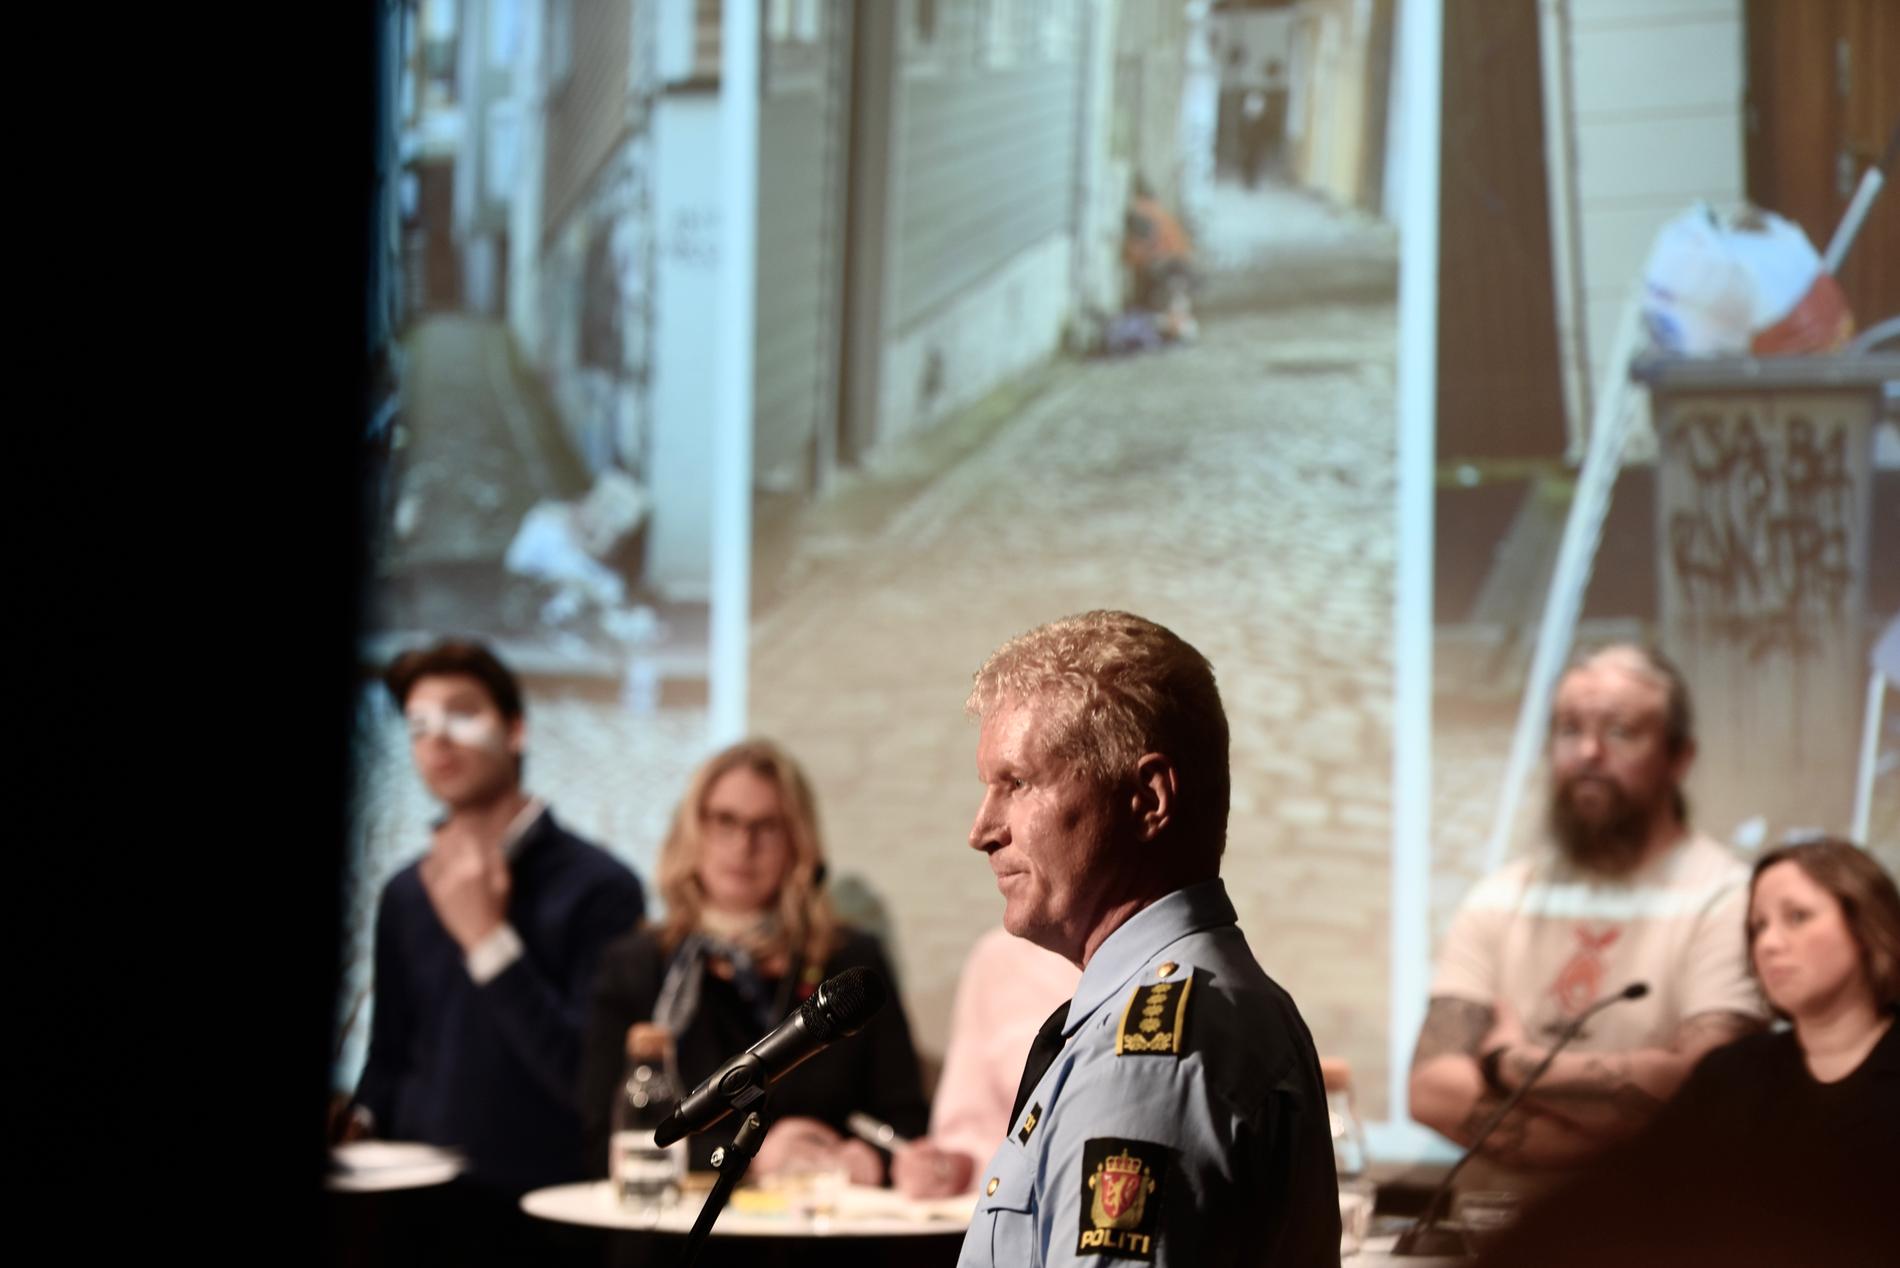 Polititoppen Morten Ørn representerte politiet under tirsdagens debattmøte.